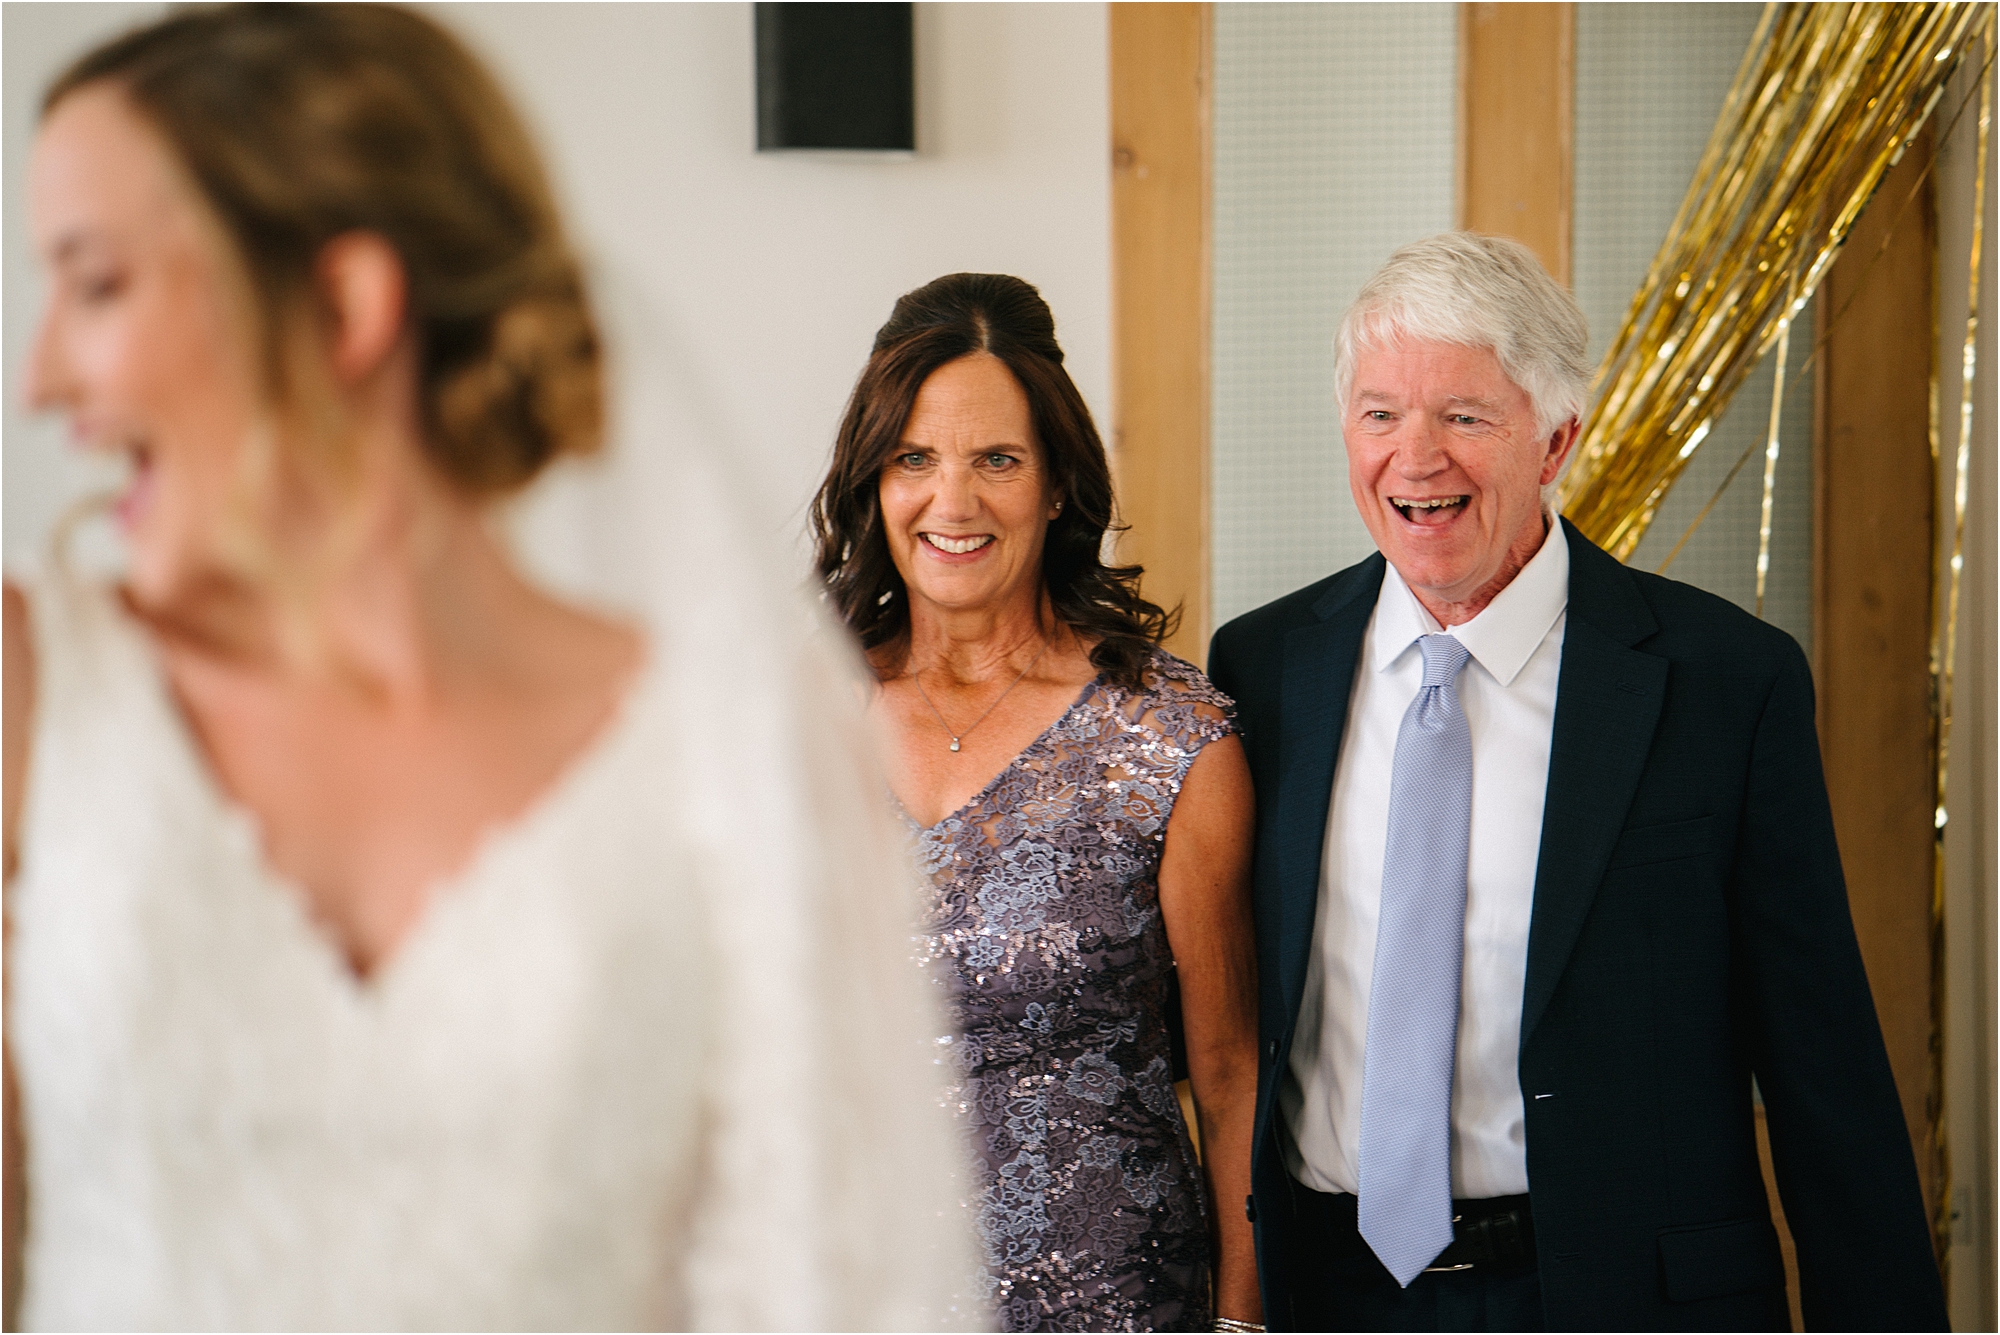 Parents admiring a brides dress. 